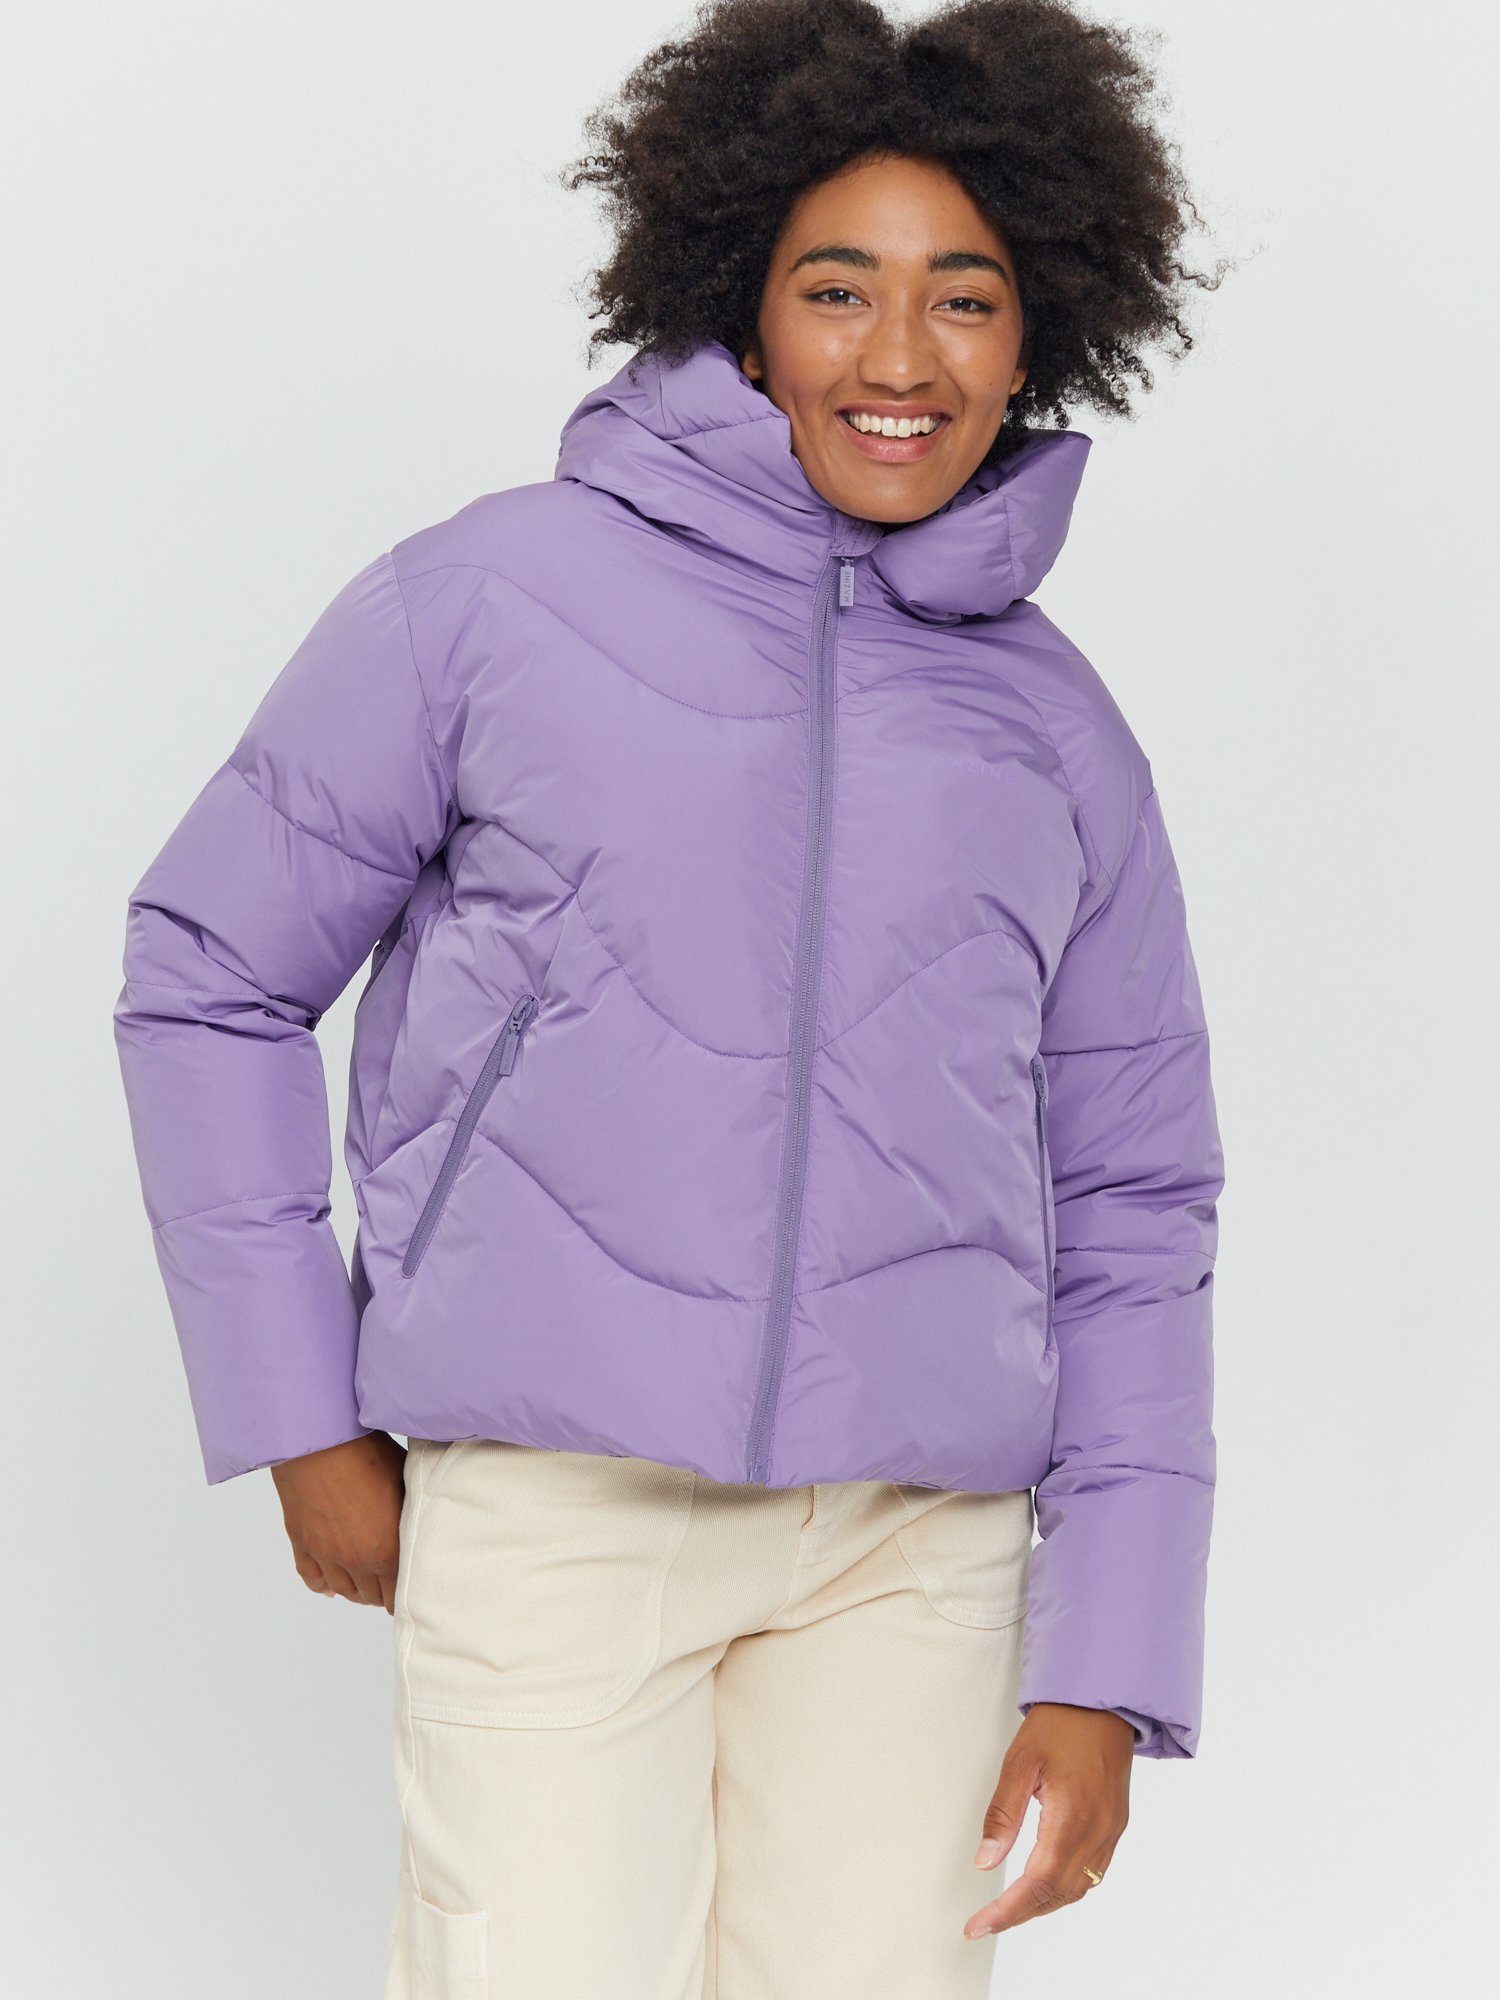 haze gefüttert purple Winterjacke MAZINE Puffer Jacket warm Dana